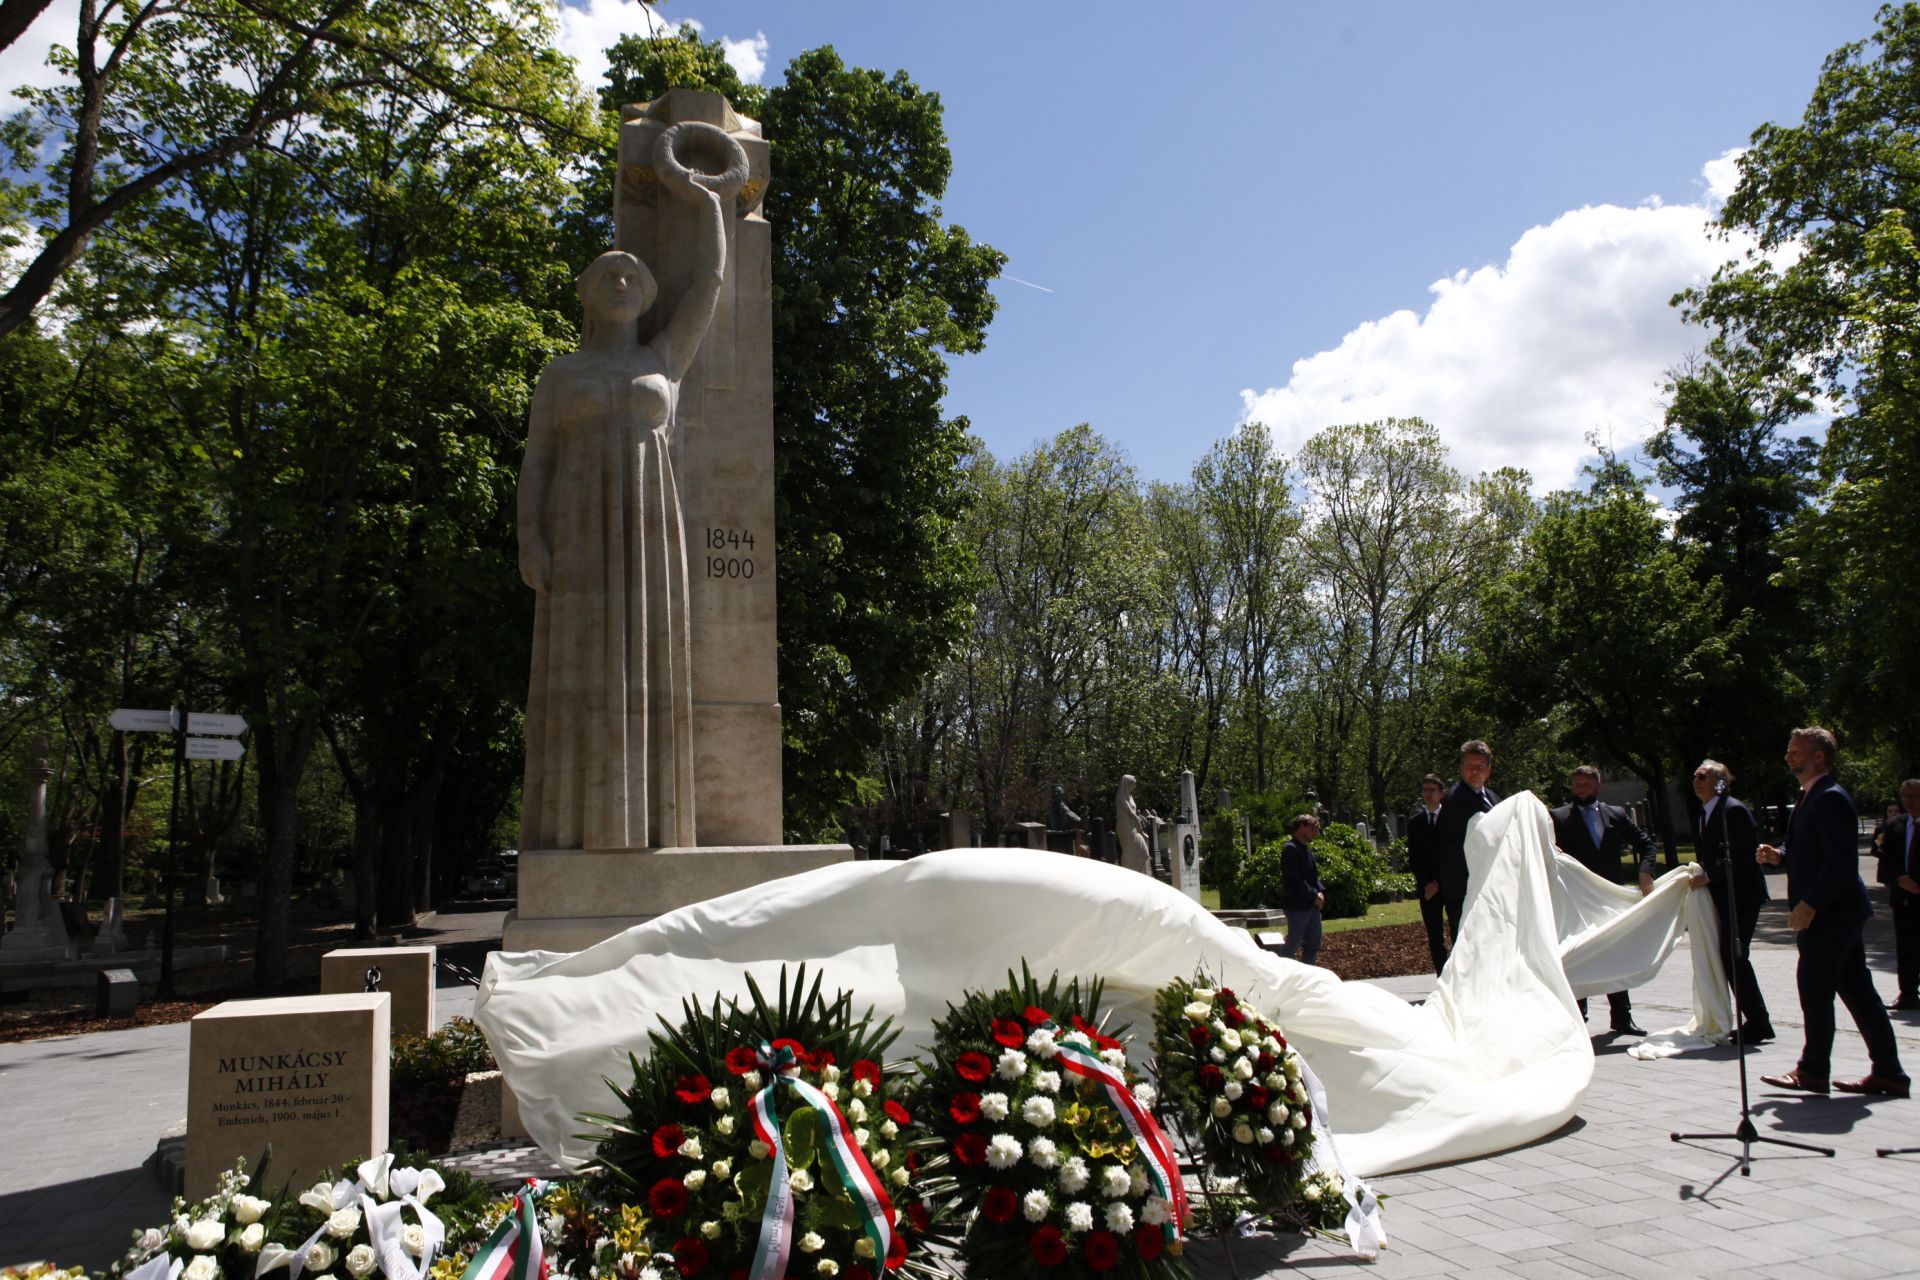 Megújult Munkácsy Mihály síremléke